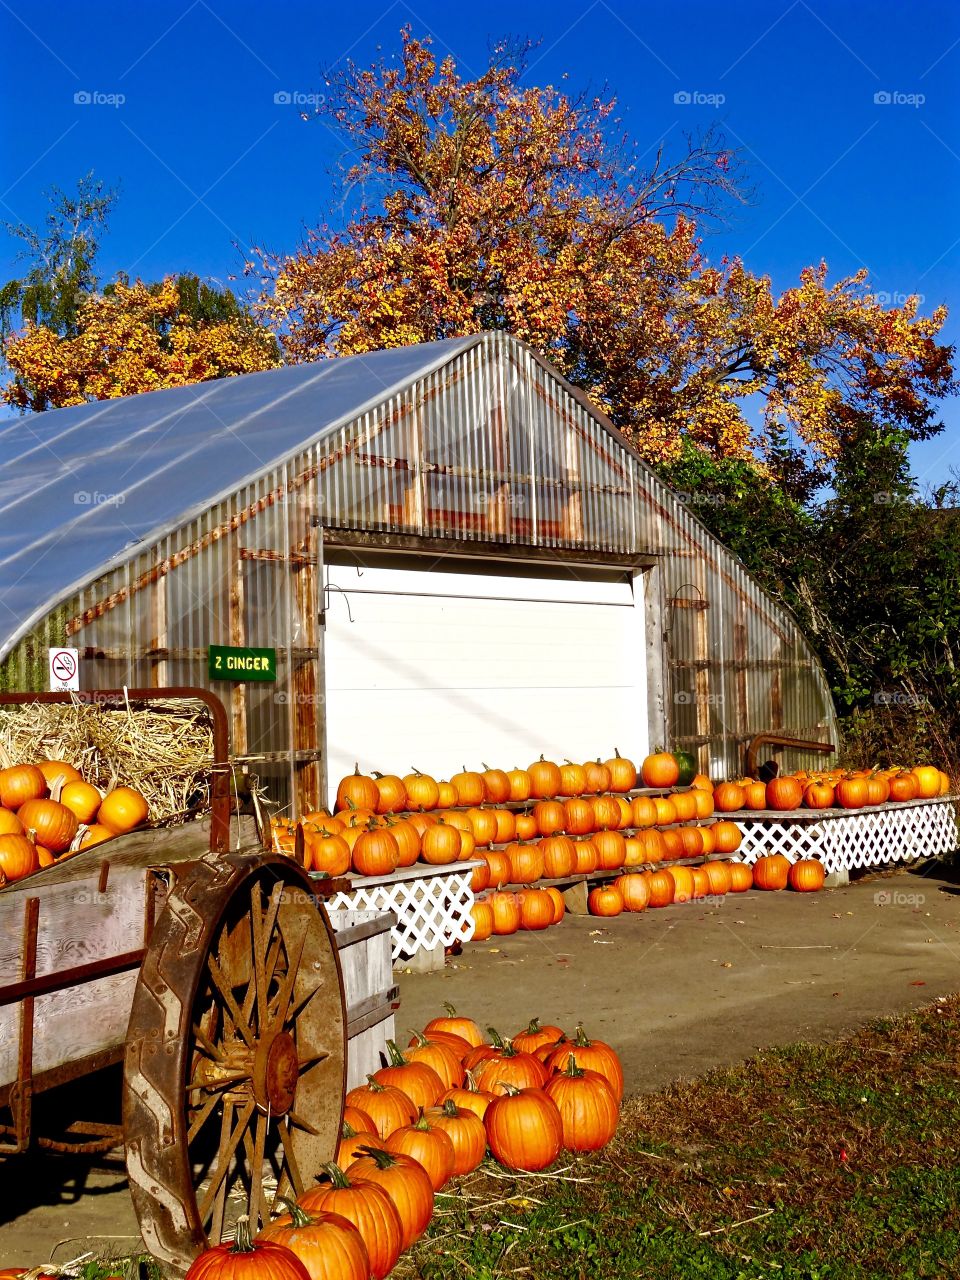 October at the pumpkin farm